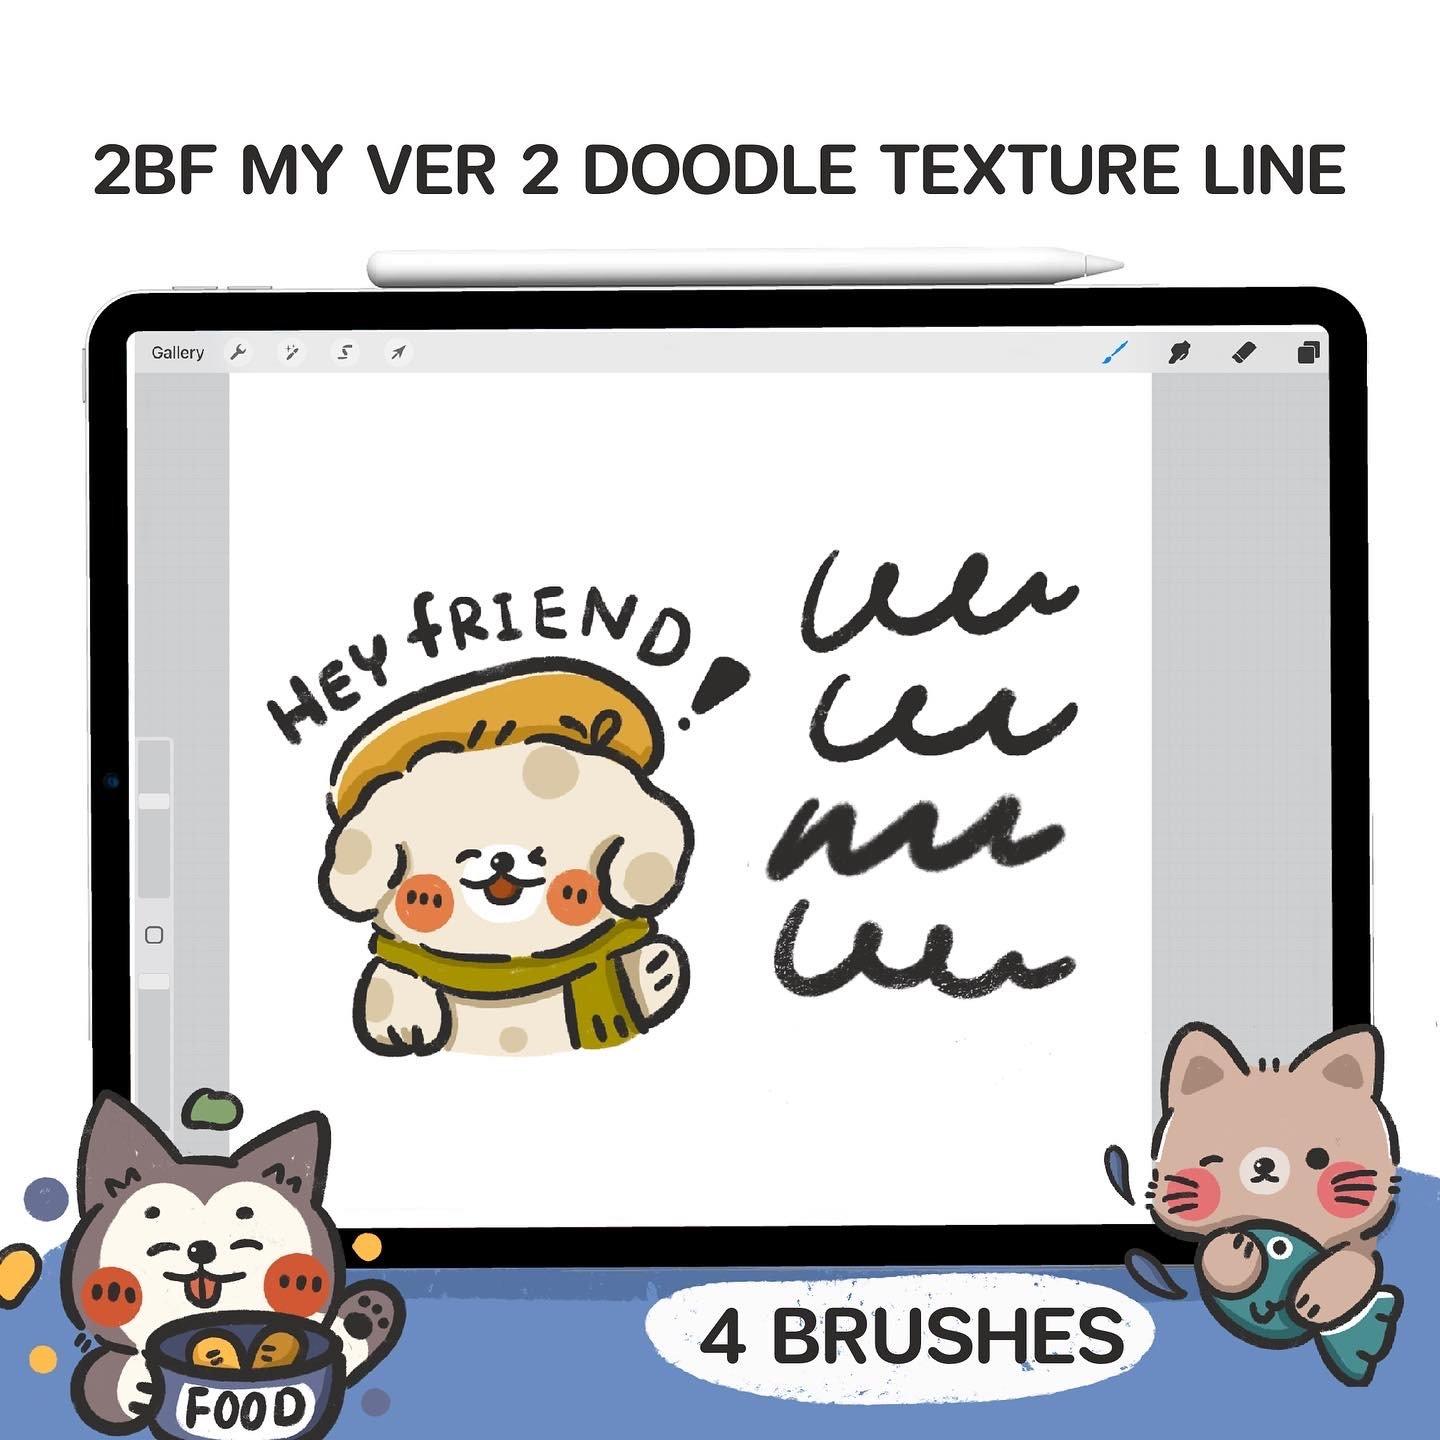 2BF my Ver2 Doodle Texture Line